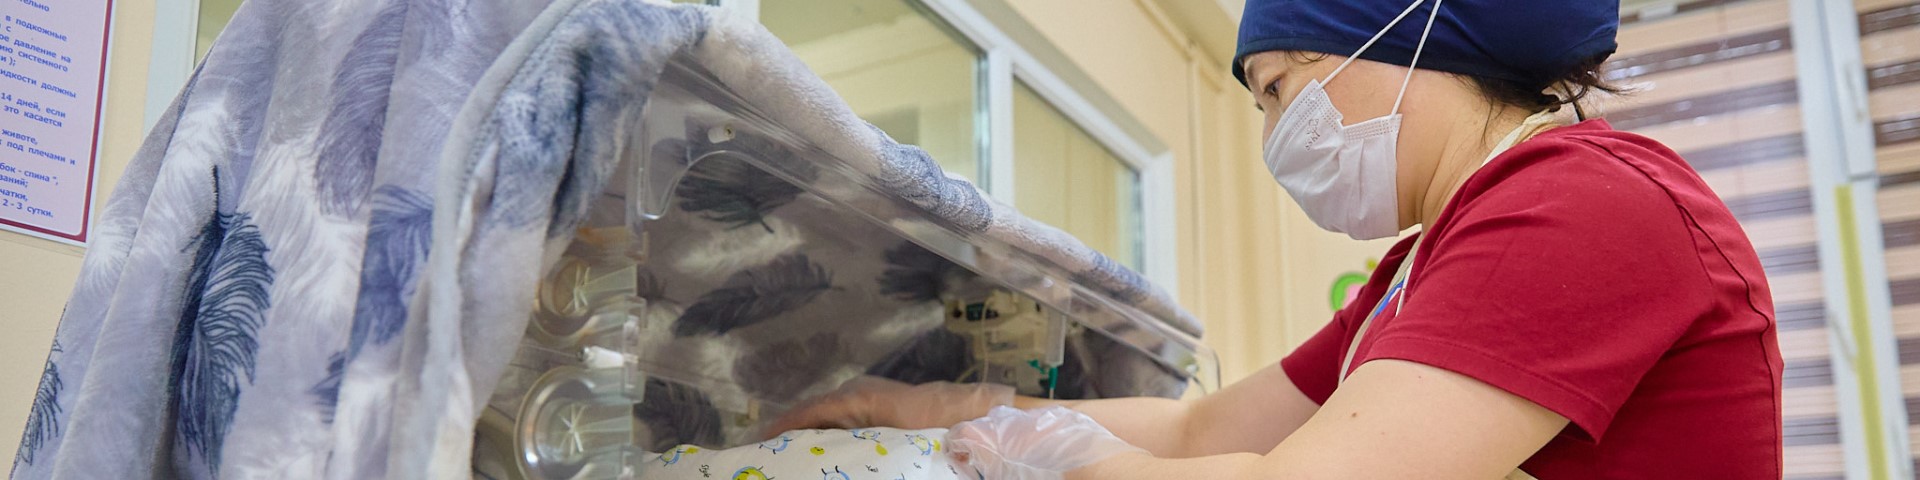 Eine Person in Schutzkleidung greift in einen medizinischen Inkubator. Copyright: GIZ/Stepanov Pavel